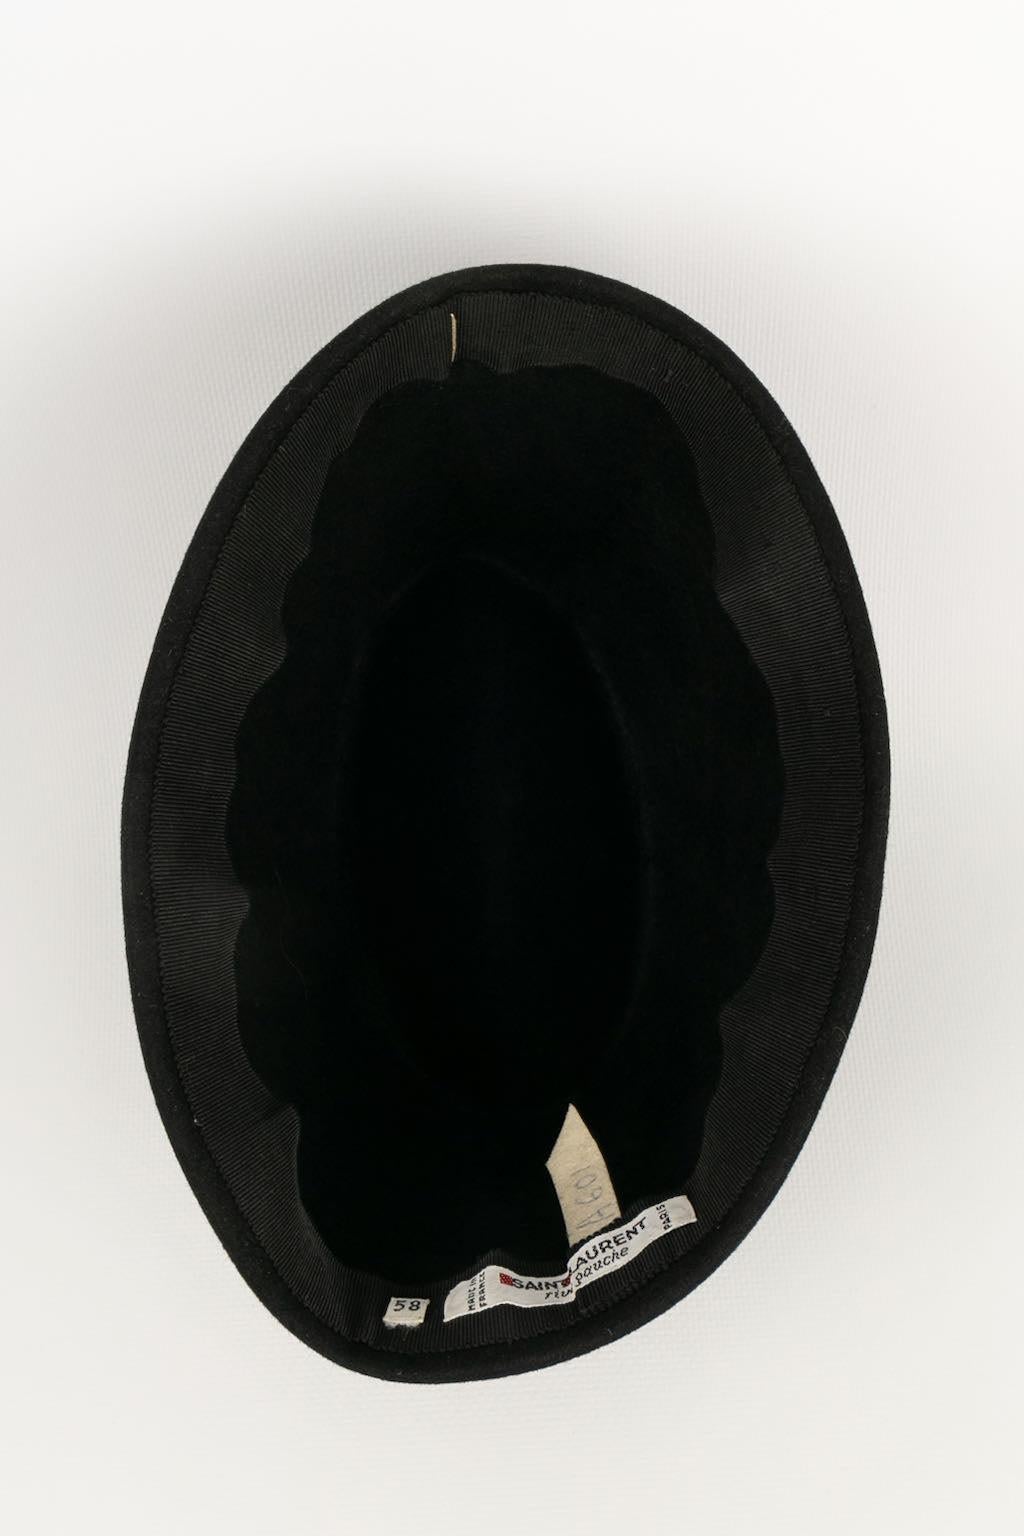 Yves Saint Laurent Fez Hat in Black Felt 3